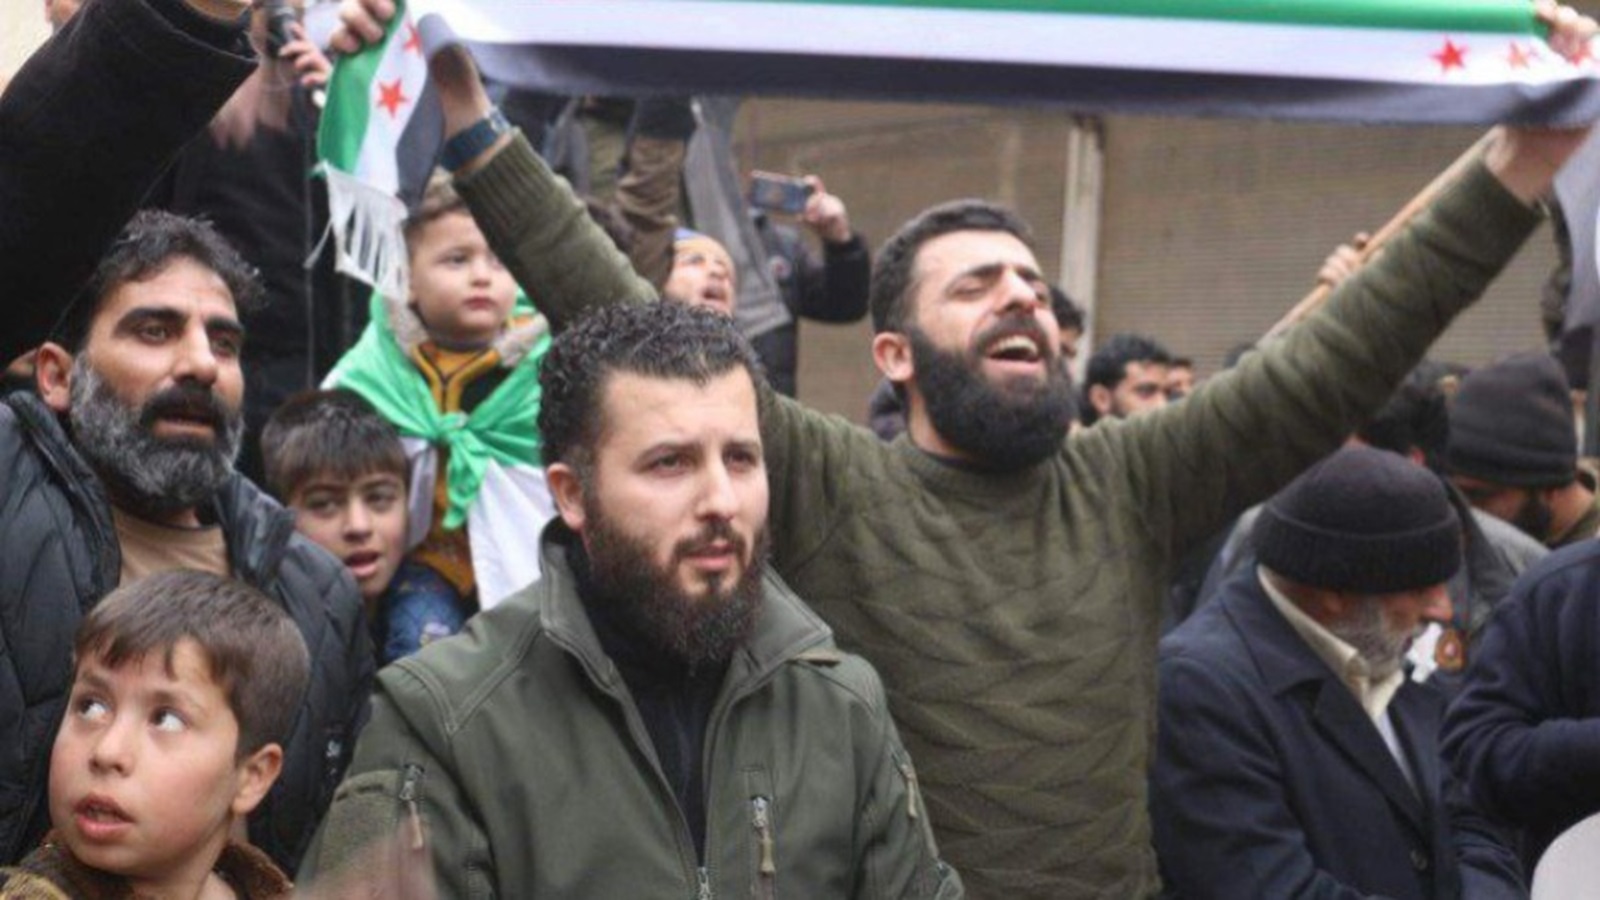 سوريا:قادة المجلس العسكري ل"فرقة المعتصم"يسلمون أنفسهم..حقناً للدماء